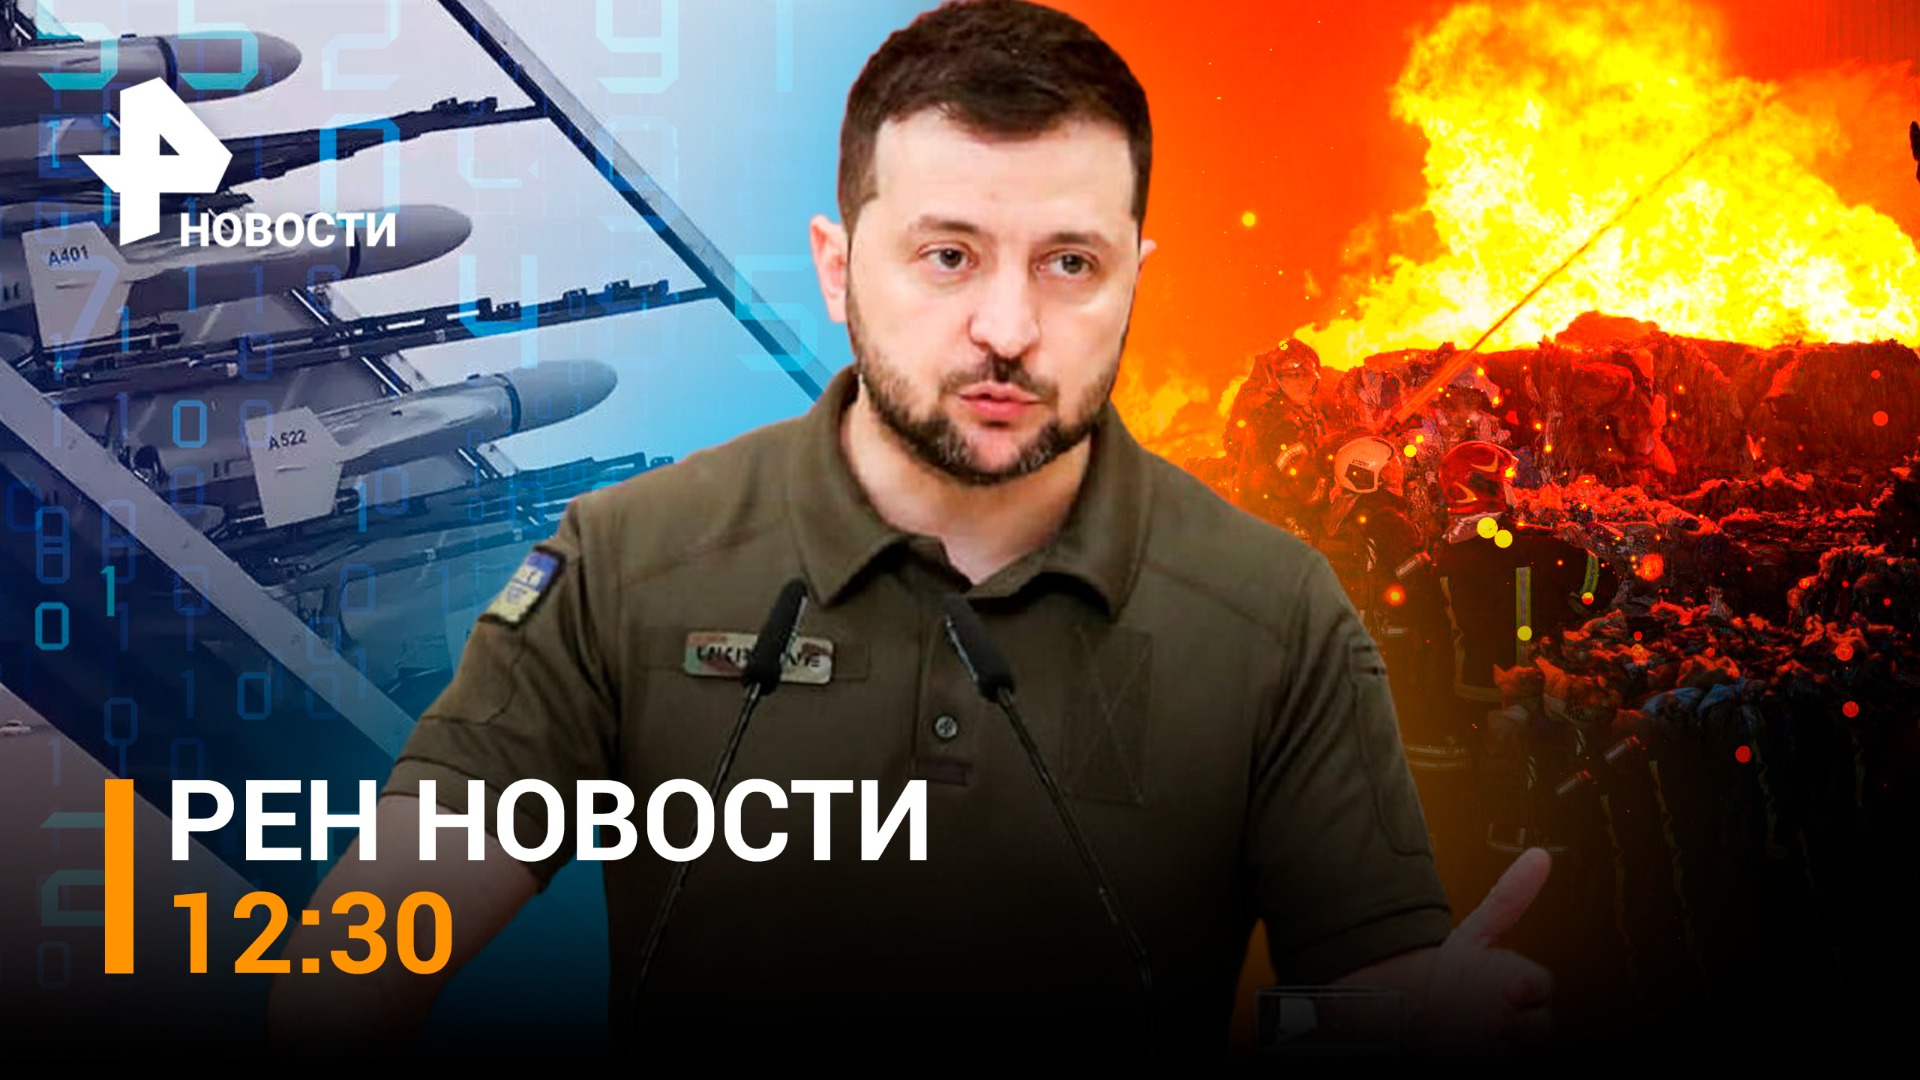 Новые удары по Киеву. ПВО не могут отразить дроны-камикадзе / РЕН НОВОСТИ 12:30 от 13.10.2022